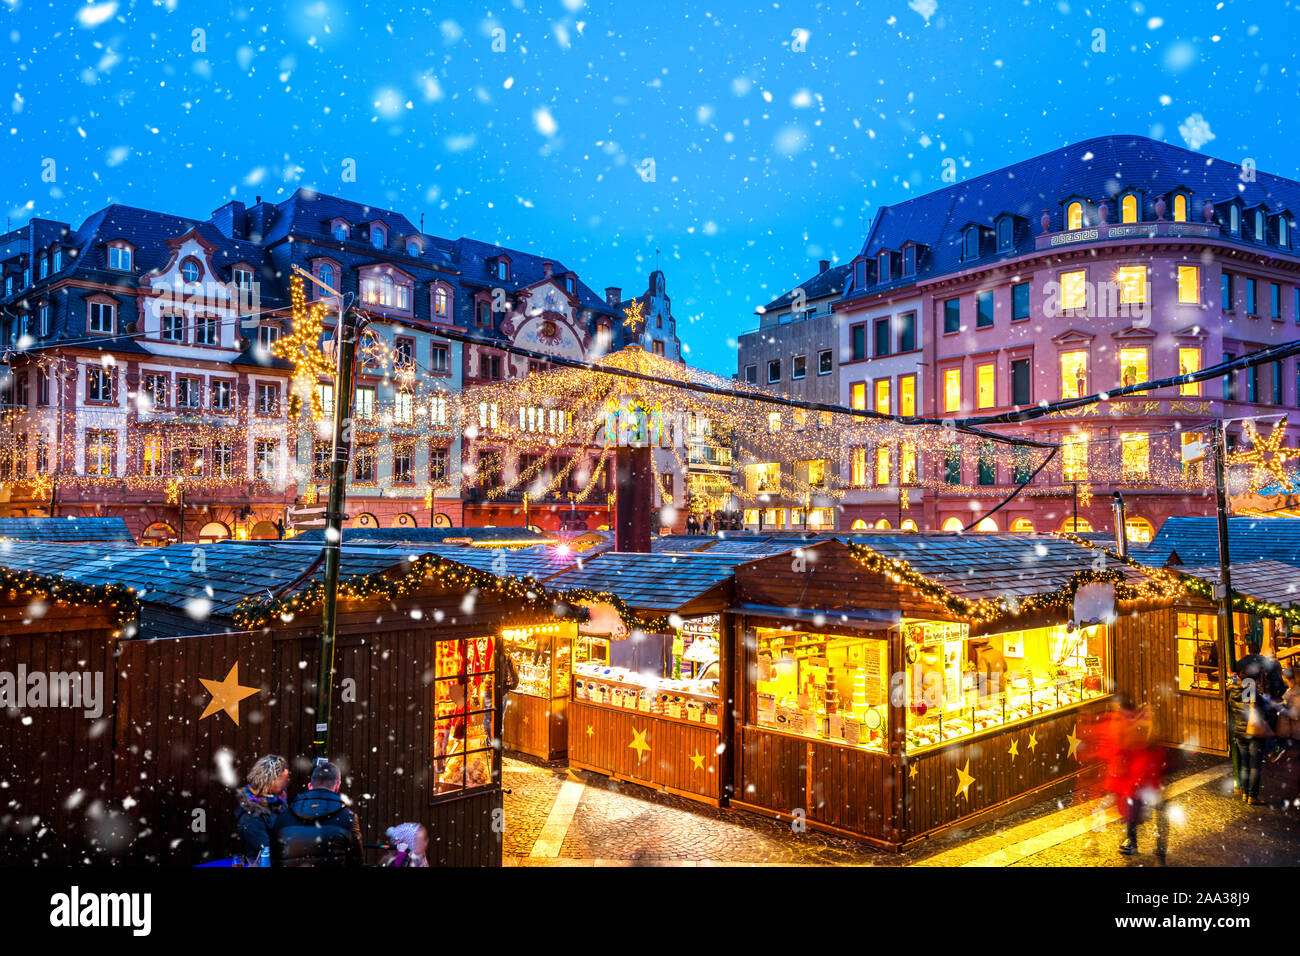 Weihnachtsmarkt in Mainz, Deutschland Stockfoto